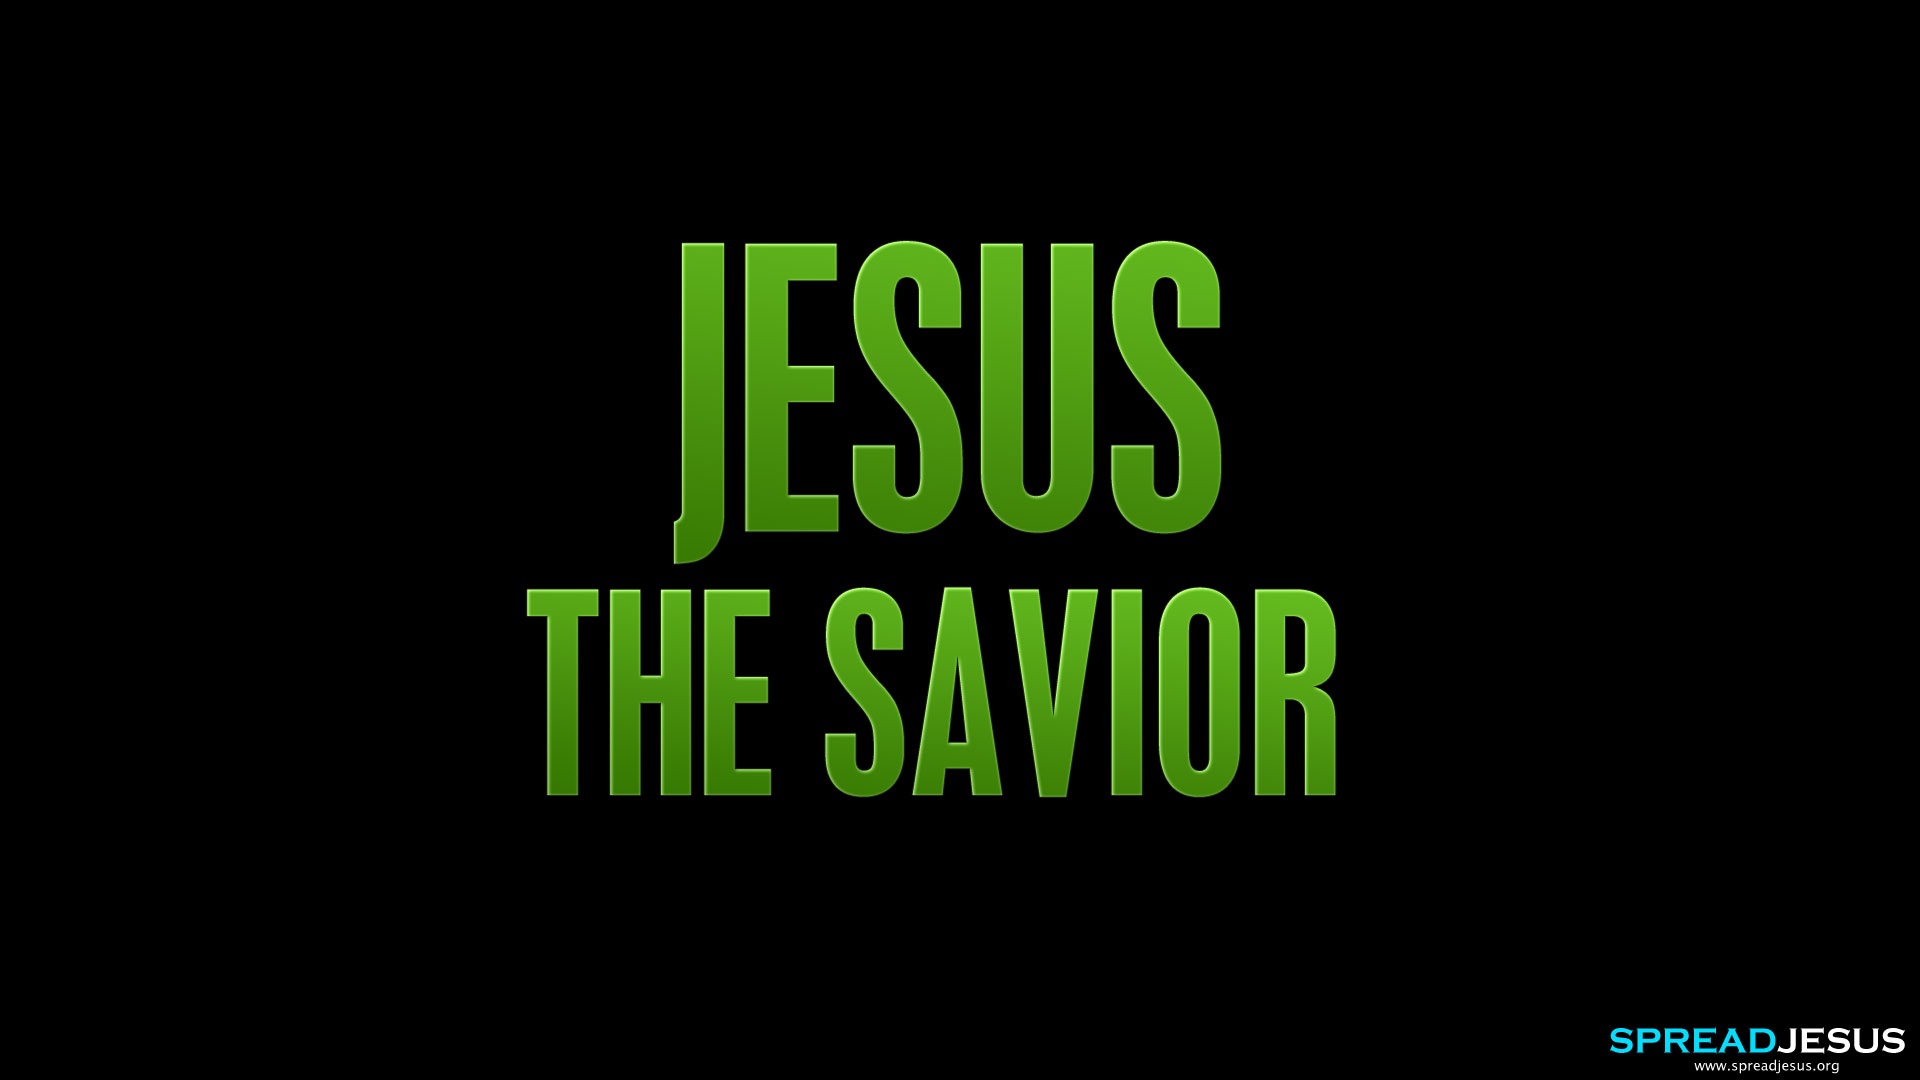 Jesus Christ HD Wallpaper The Savior